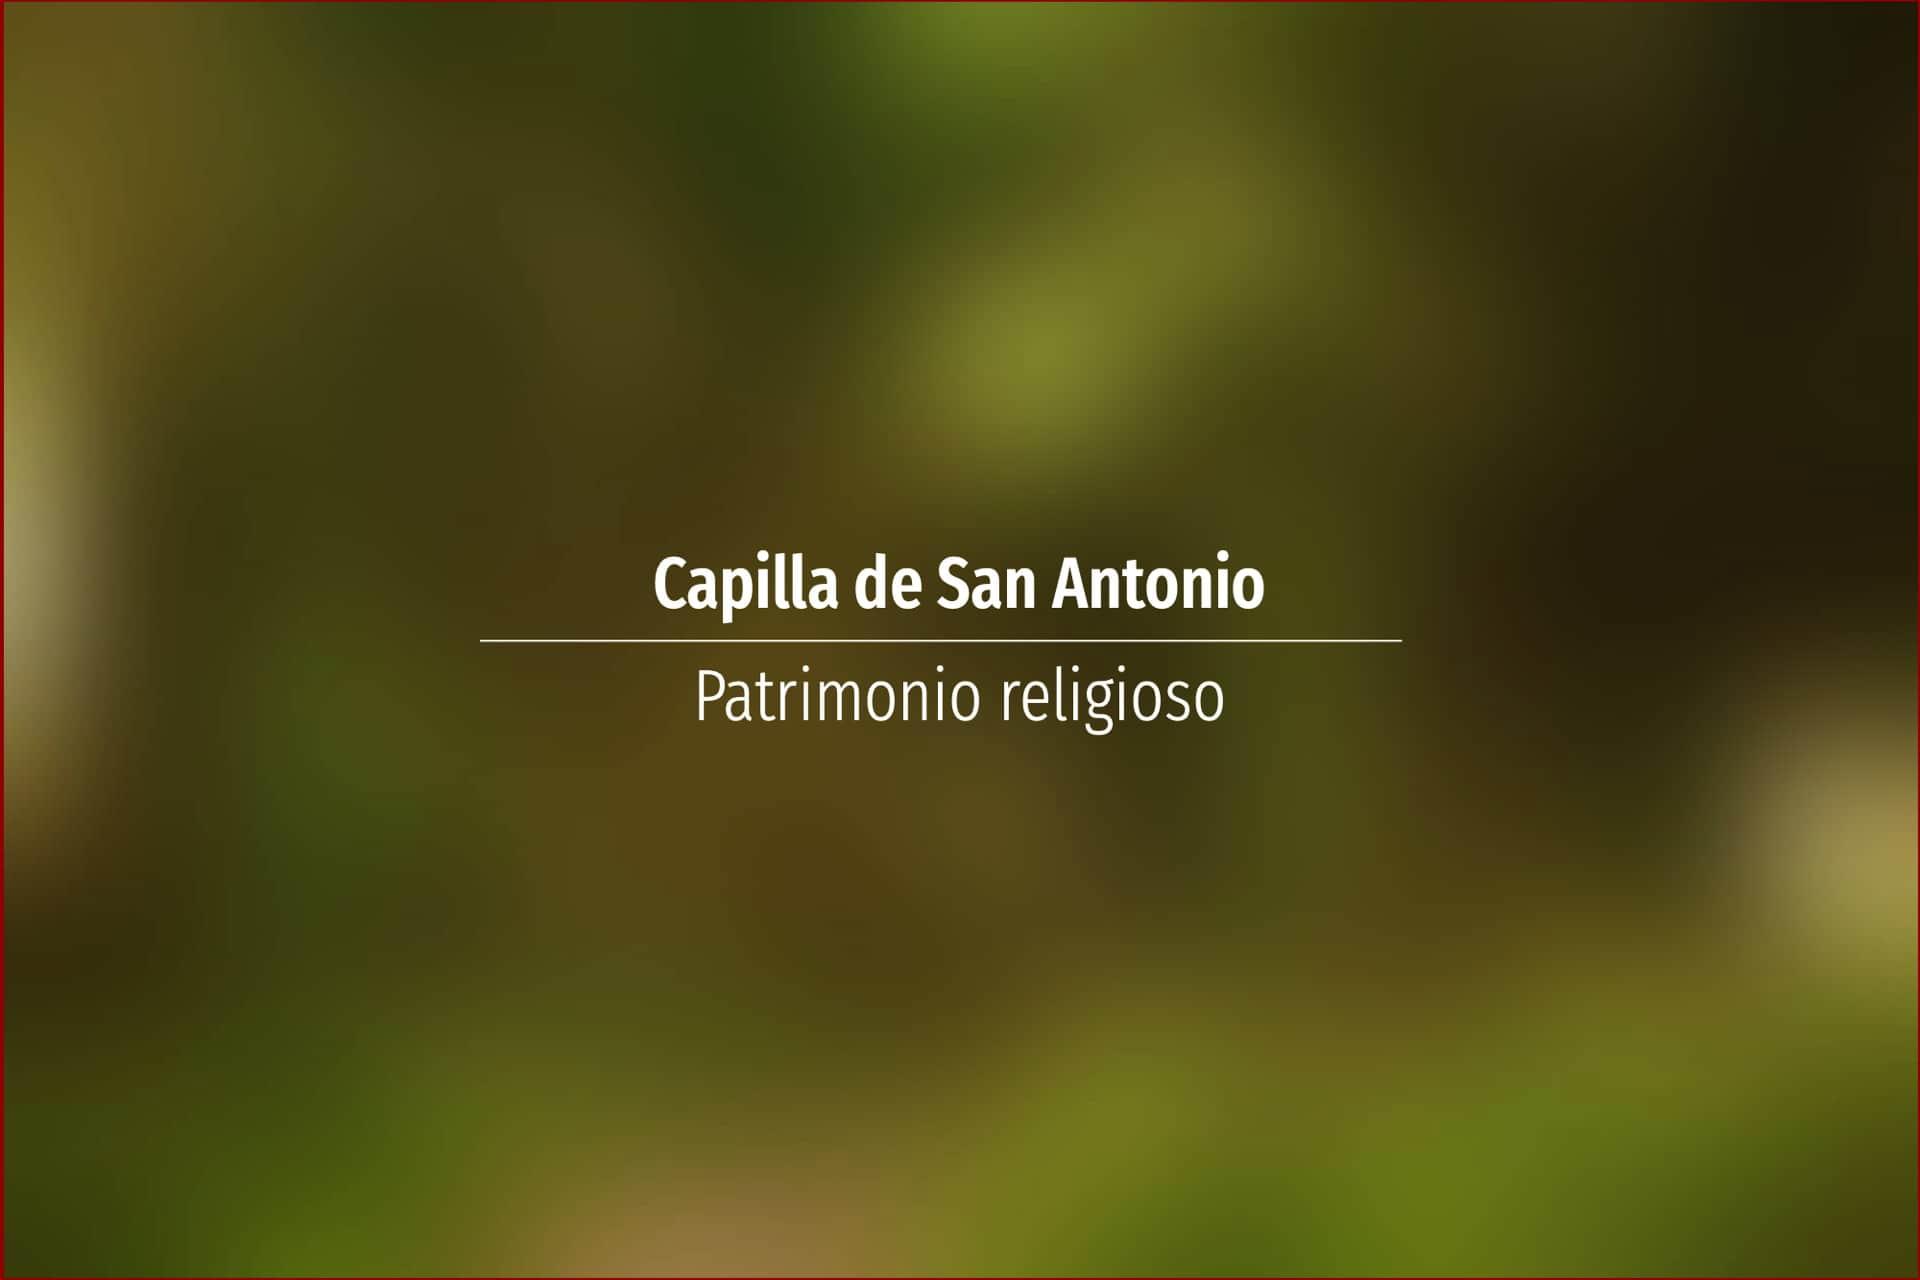 Capilla de San Antonio